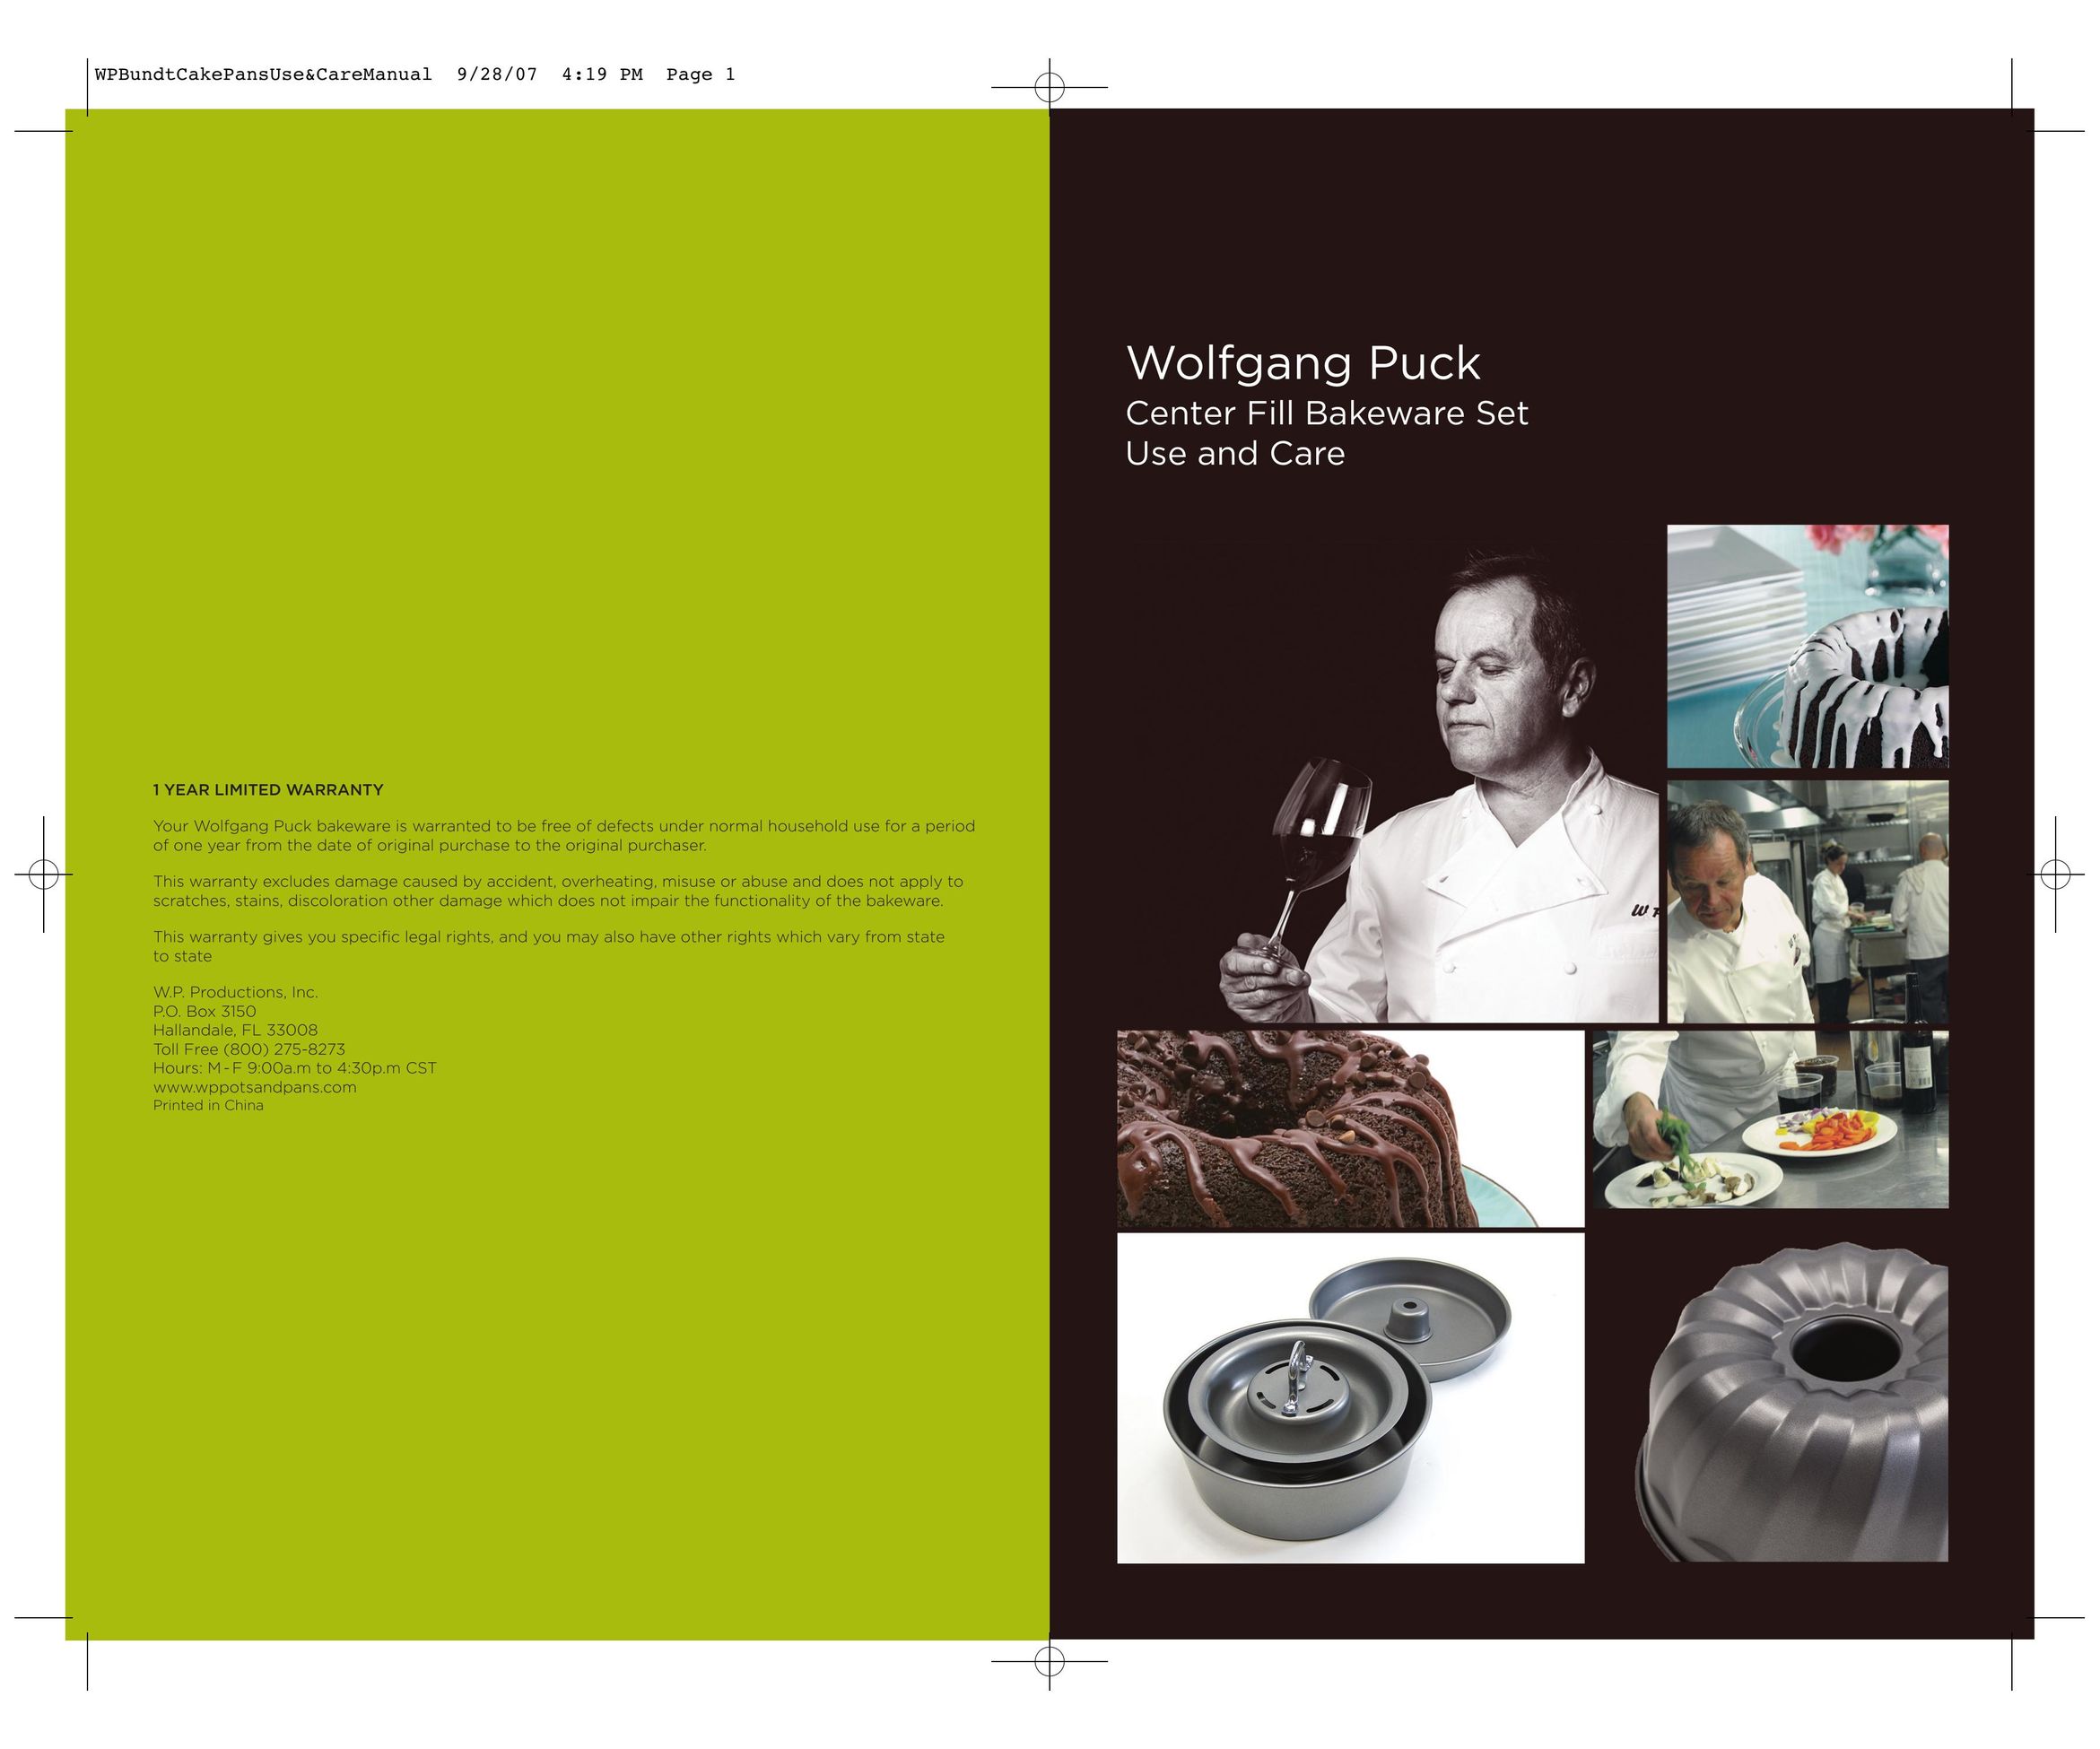 Wolfgang Puck Center Fill Bakeware Set Cookware User Manual